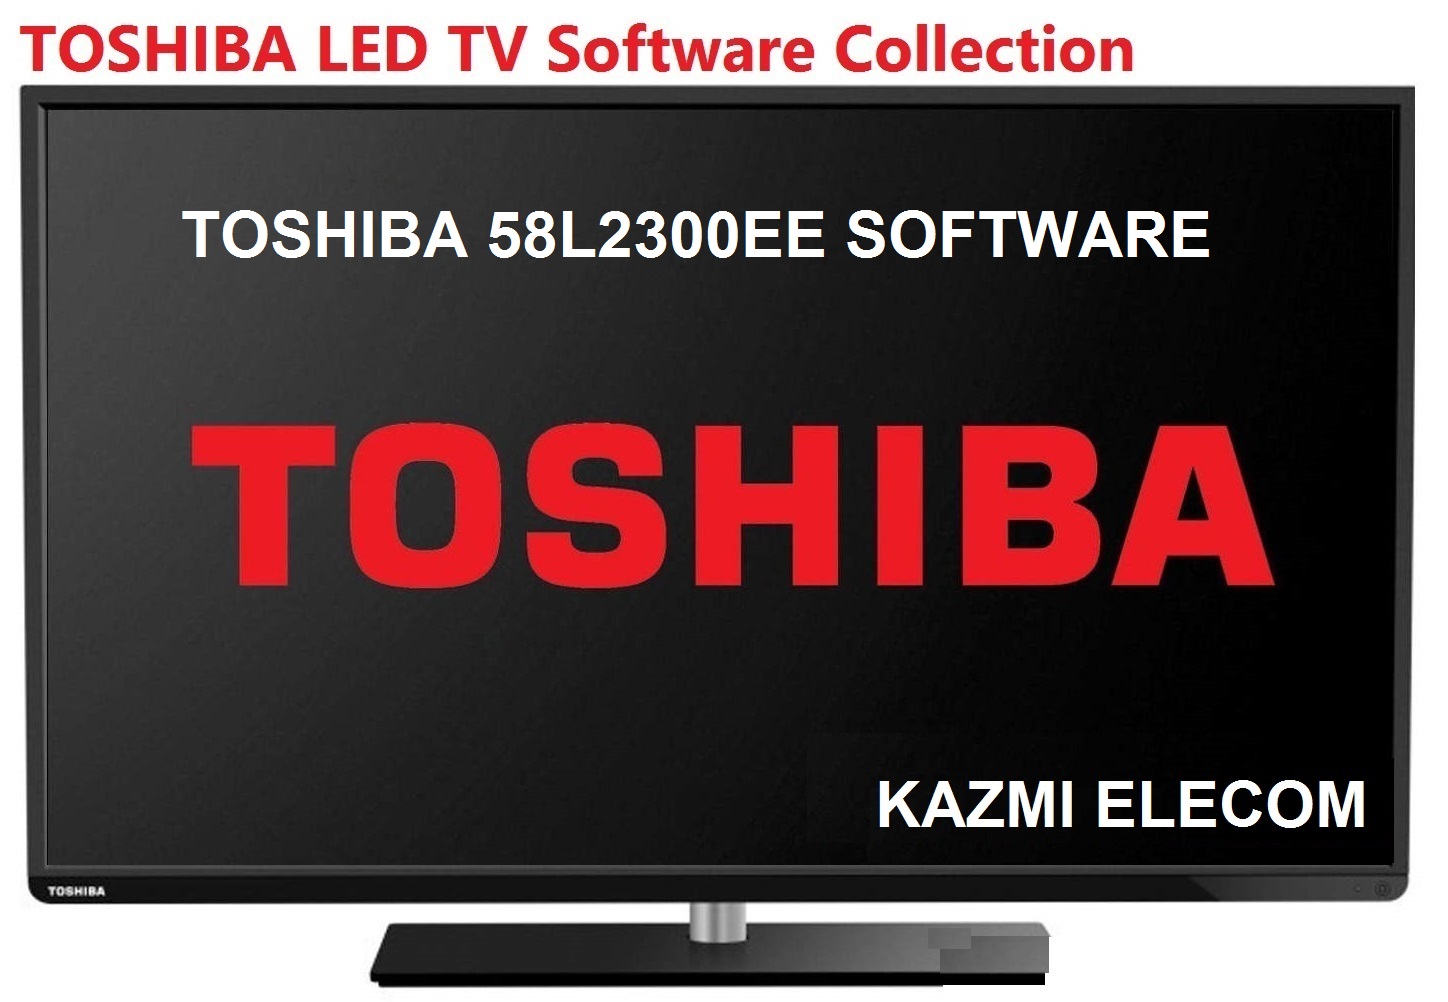 Toshiba 58L2300Ee